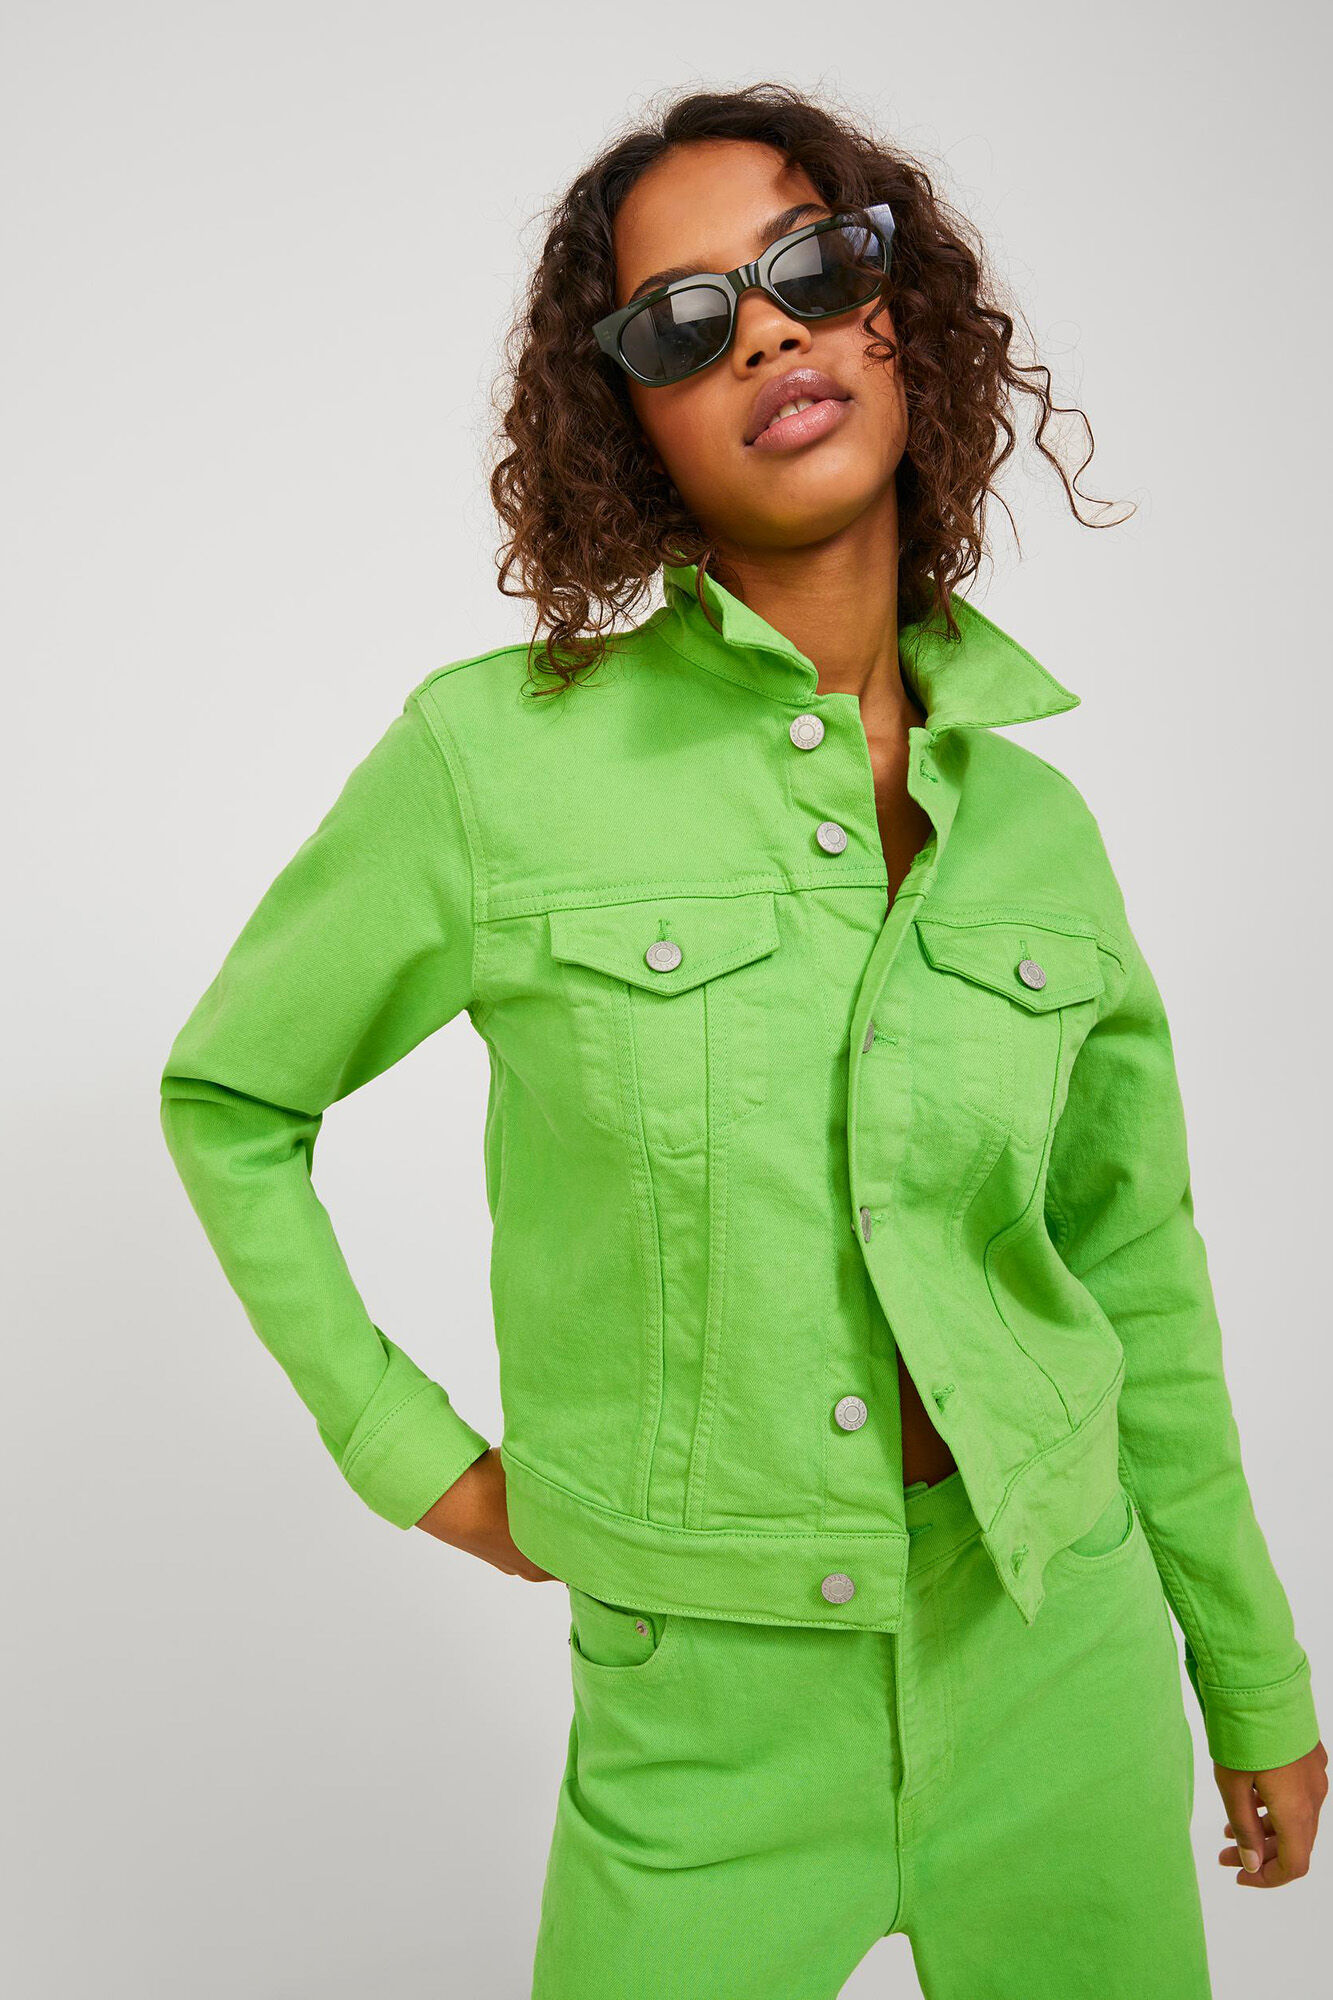 Newport - Brown/Green Denim Jacket size 12 on Designer Wardrobe